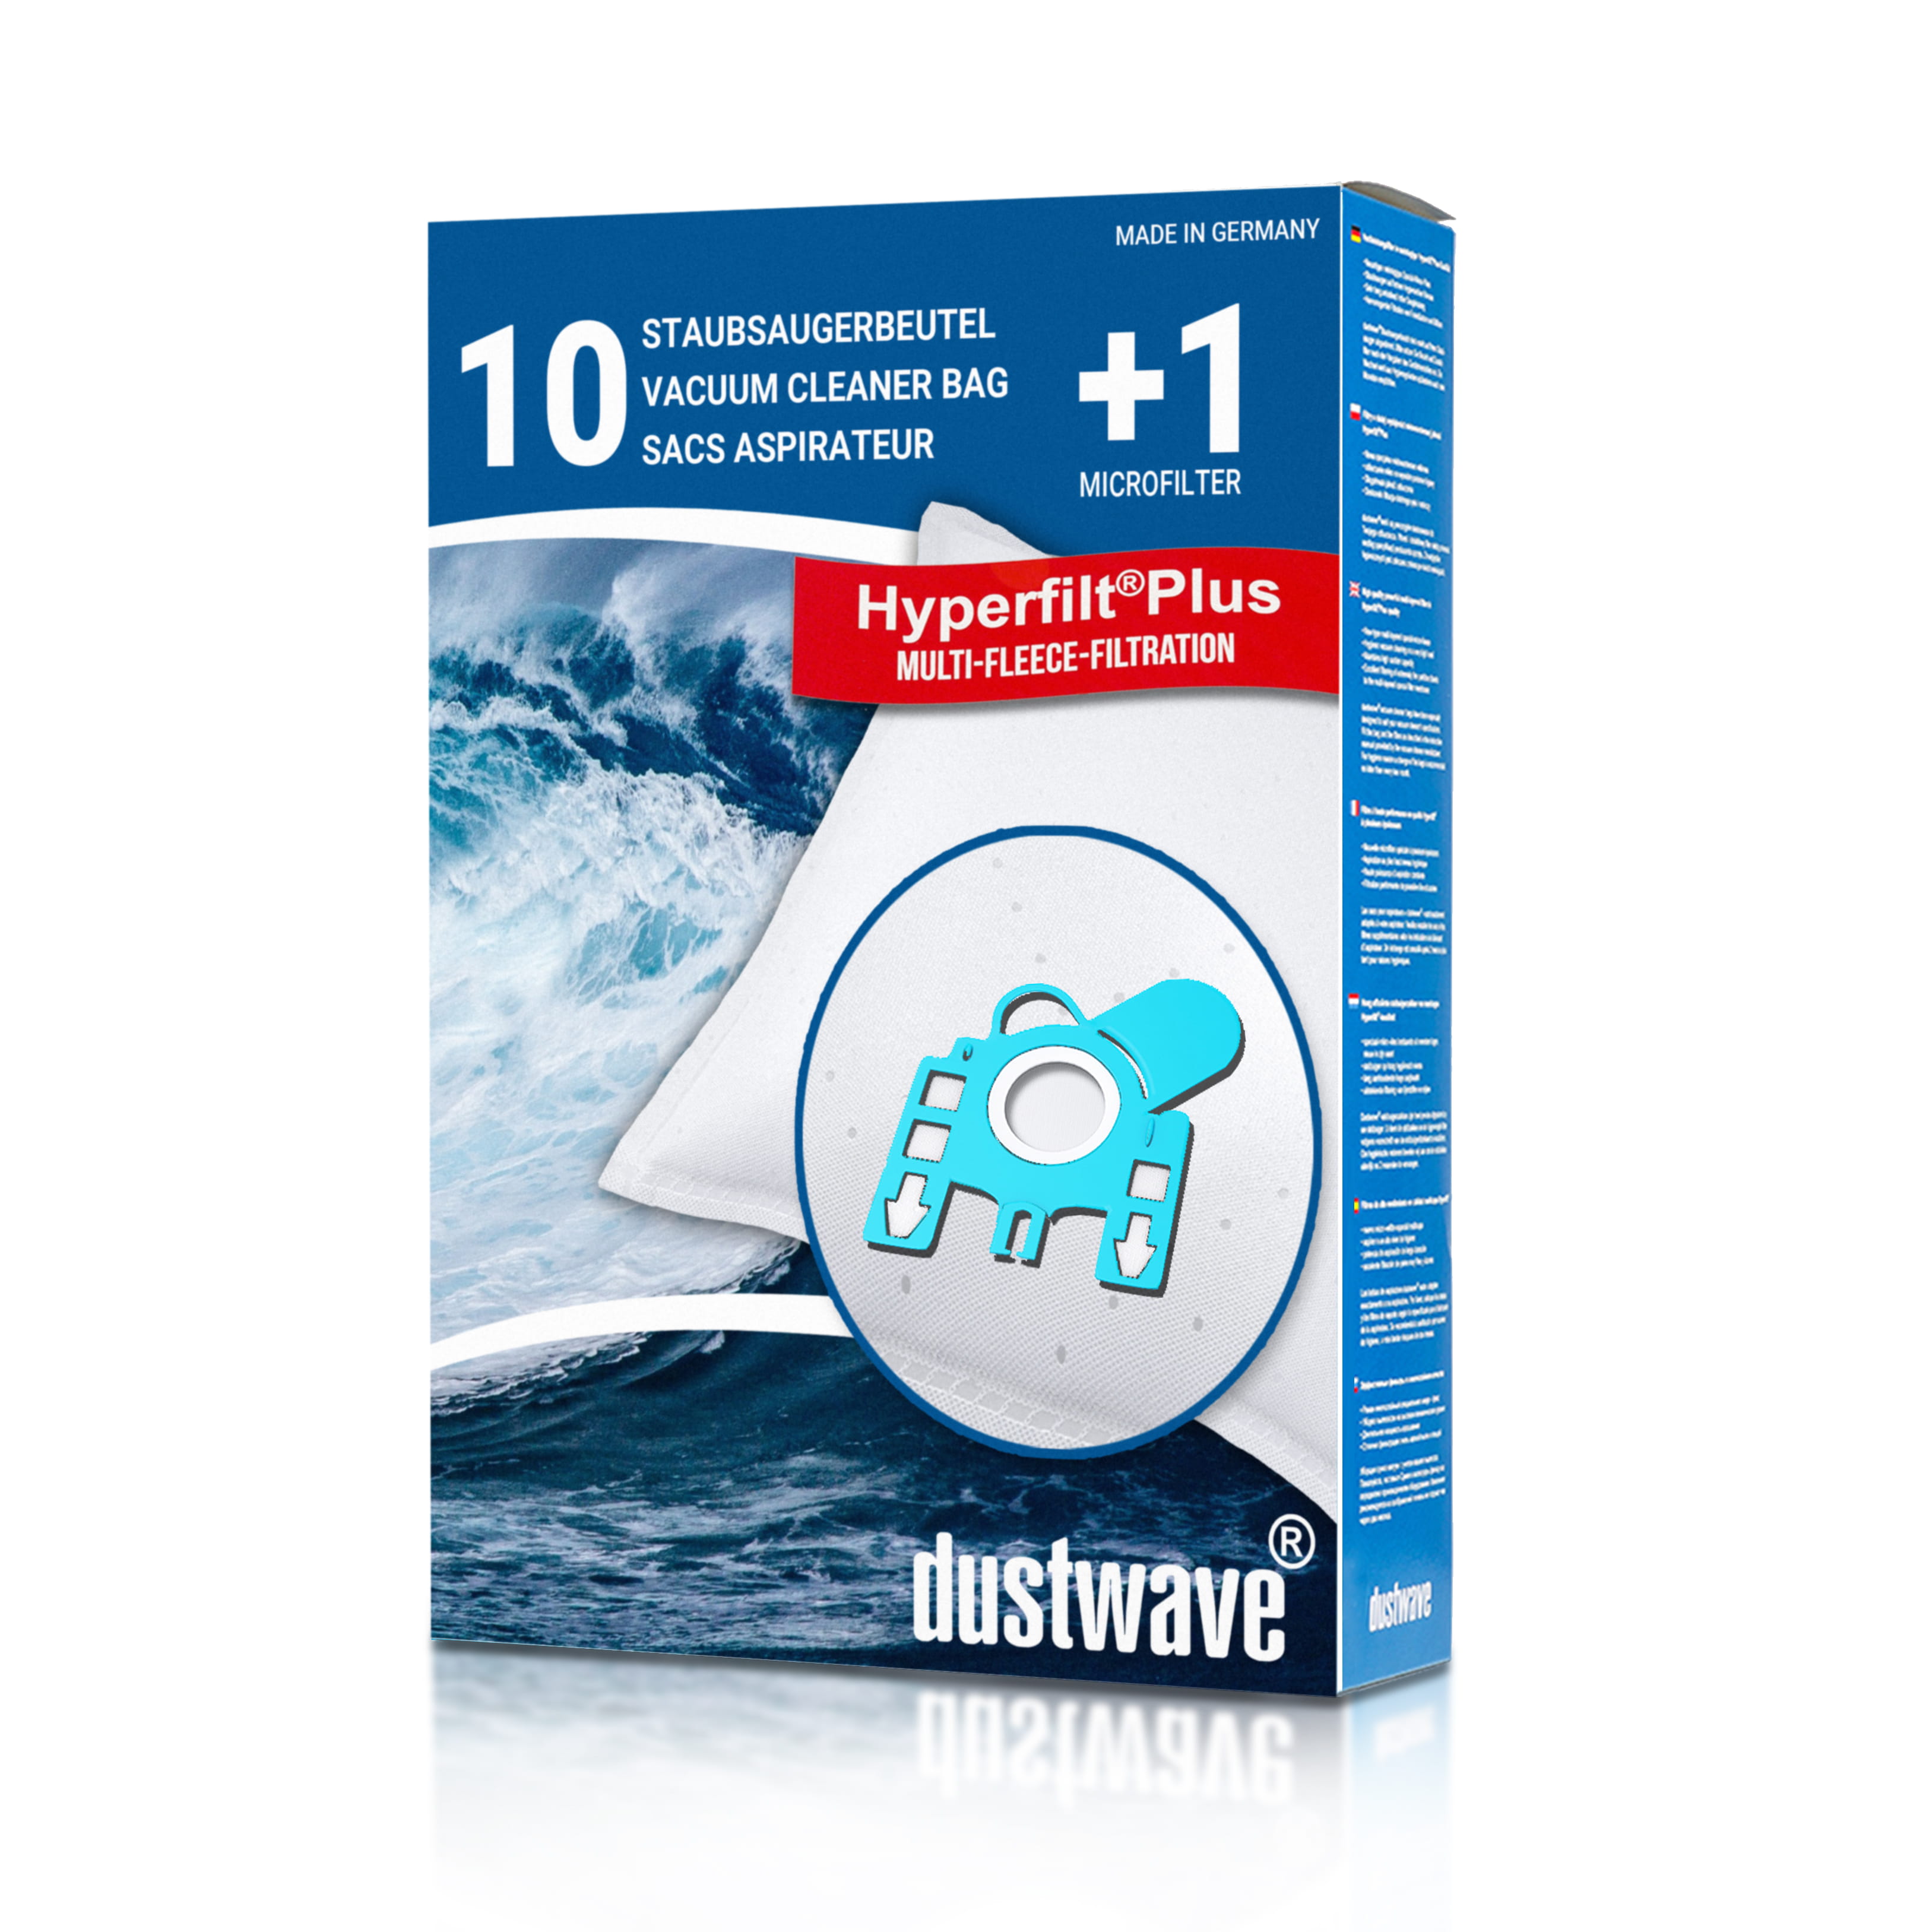 Dustwave® 10 Staubsaugerbeutel für Hoover AT70 AT11011 Athos - hocheffizient, mehrlagiges Mikrovlies mit Hygieneverschluss - Made in Germany